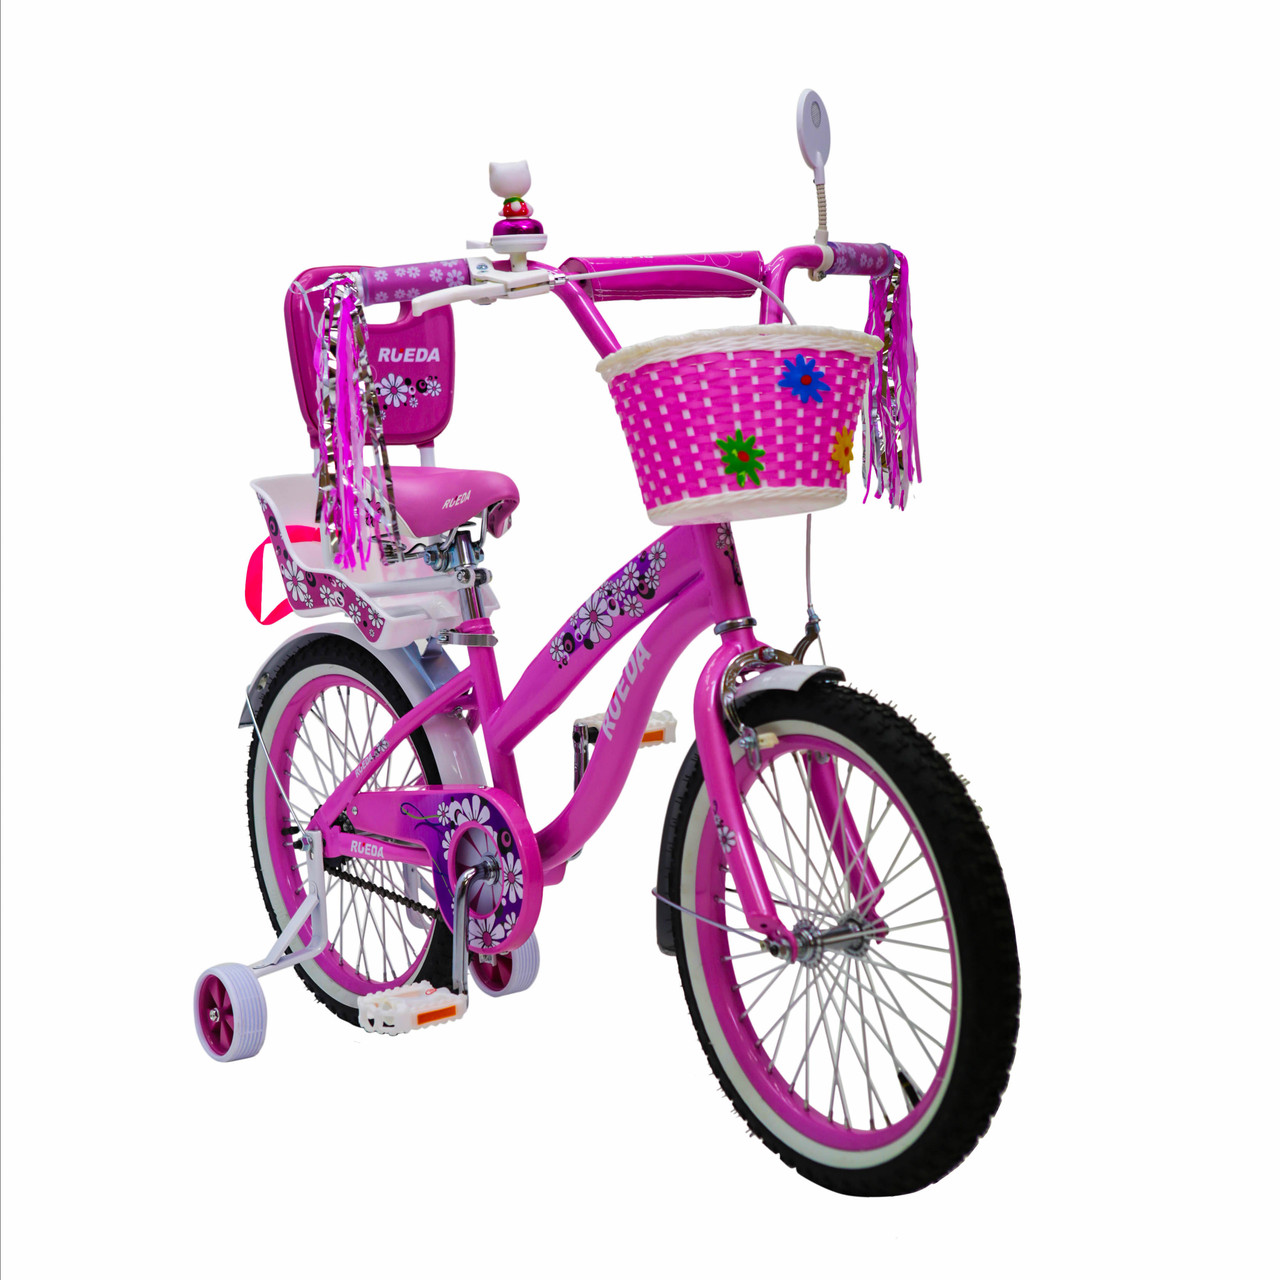 Іспанський дитячий рожевий велосипед для дівчинки з кошиком RUEDA 18 дюймів (Квіточка) на 5-8 років